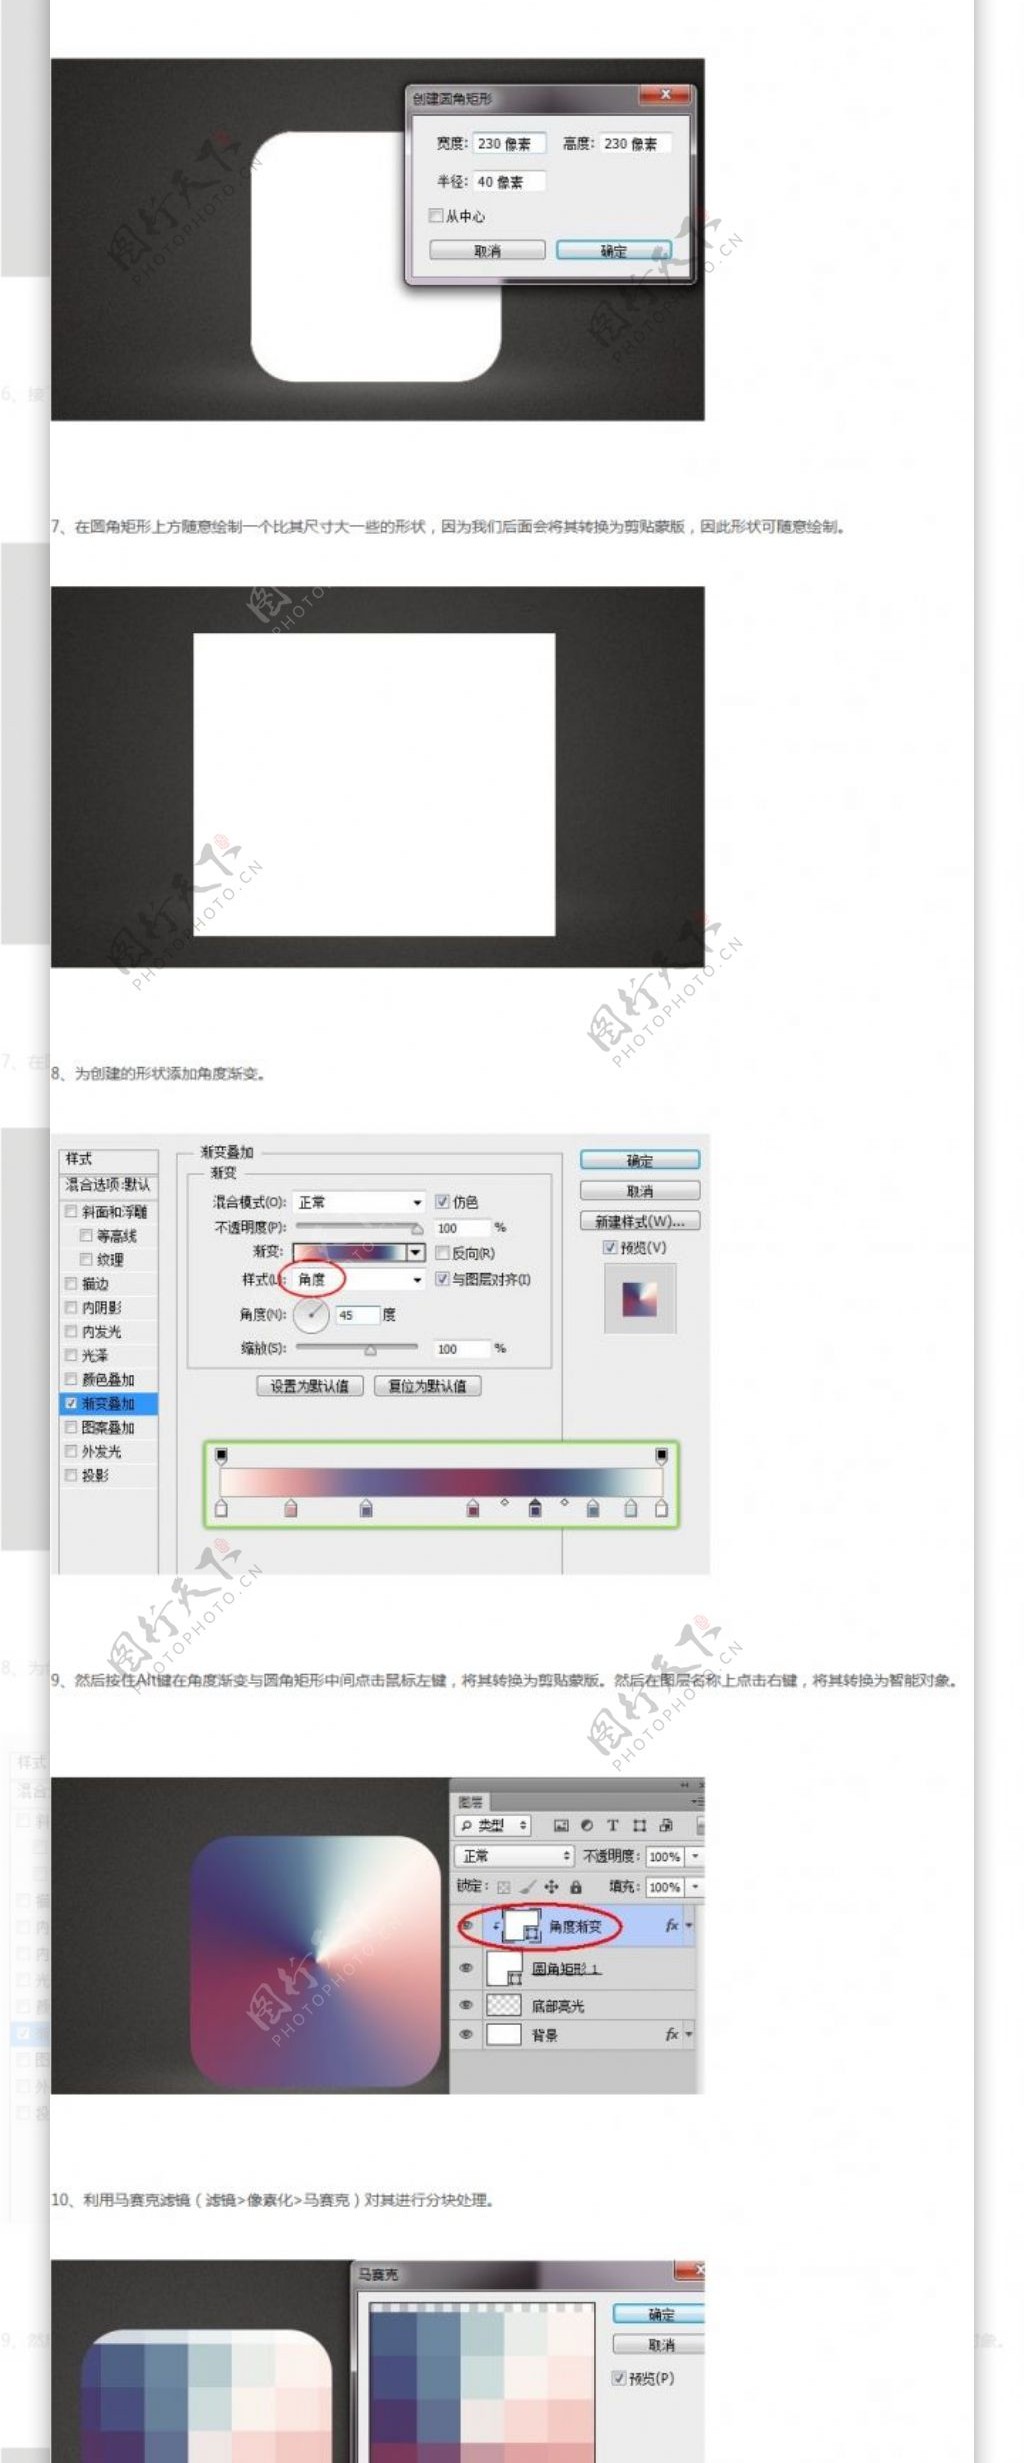 Photoshop制作精细格子纹理小图标手机界面设计手机UI设计手机图标设计UI设计教程GUImobile莫贝网